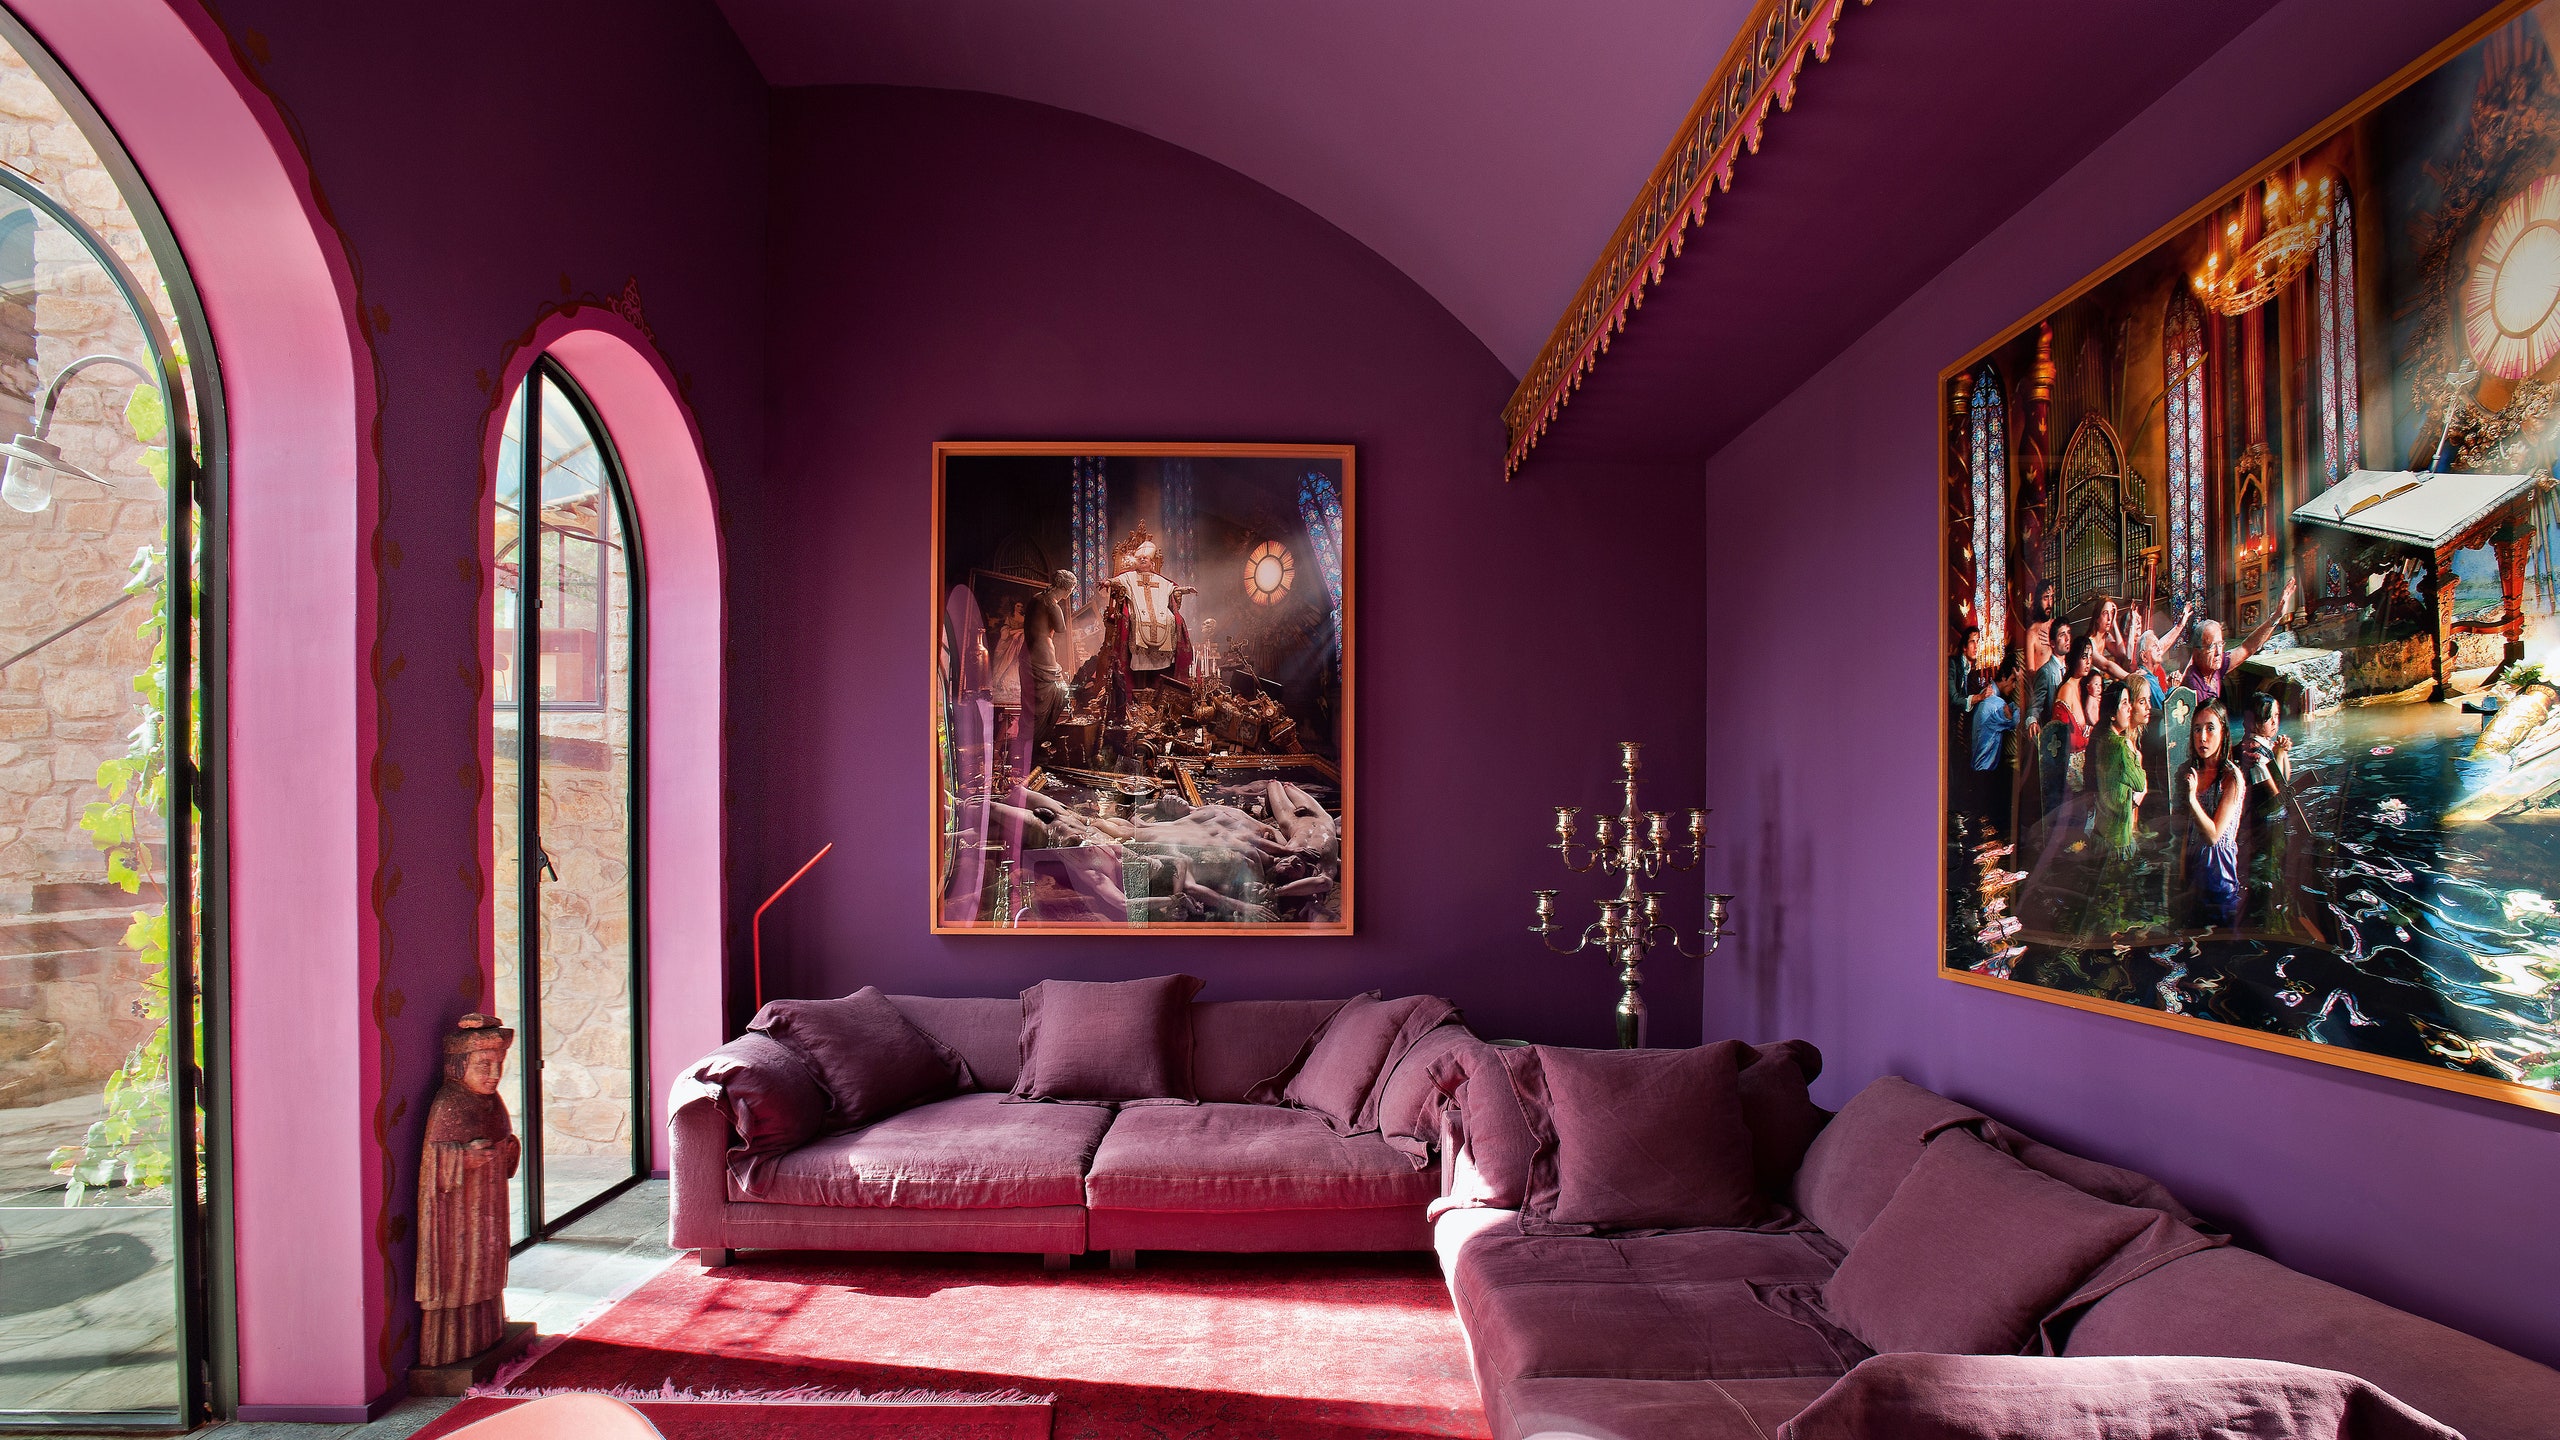 Шато Кастиньо во Франции интерьеры дома Марка Верстрате и Тины Клайс | Admagazine